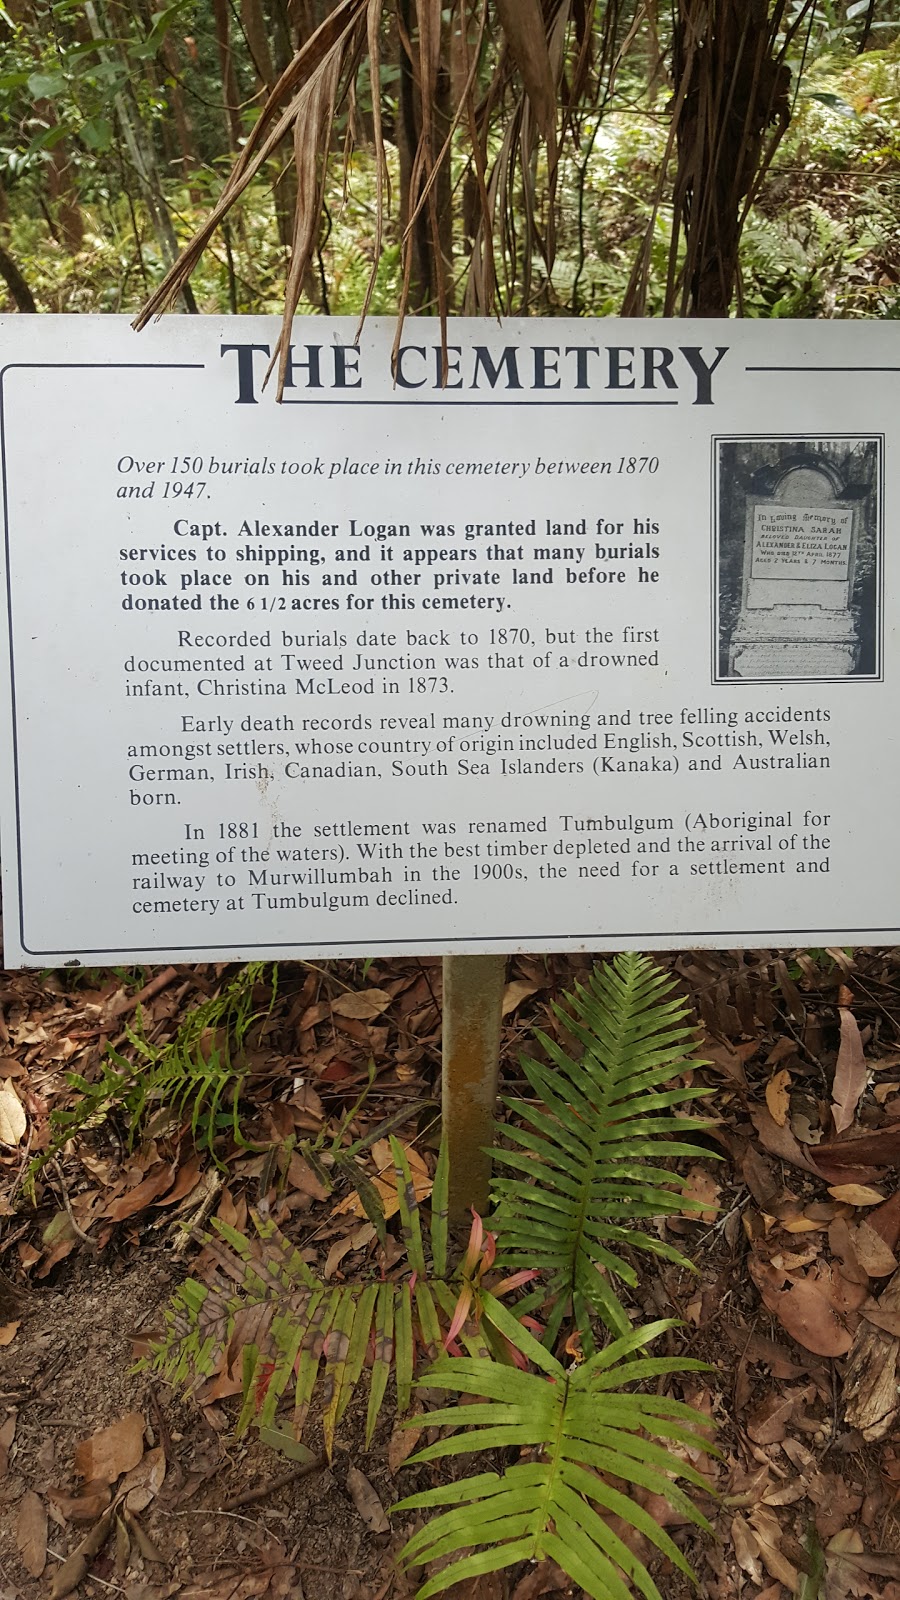 Tumbulgum Historic Cemetery | Dulguigan Rd, North Tumbulgum NSW 2490, Australia | Phone: (02) 6670 2435